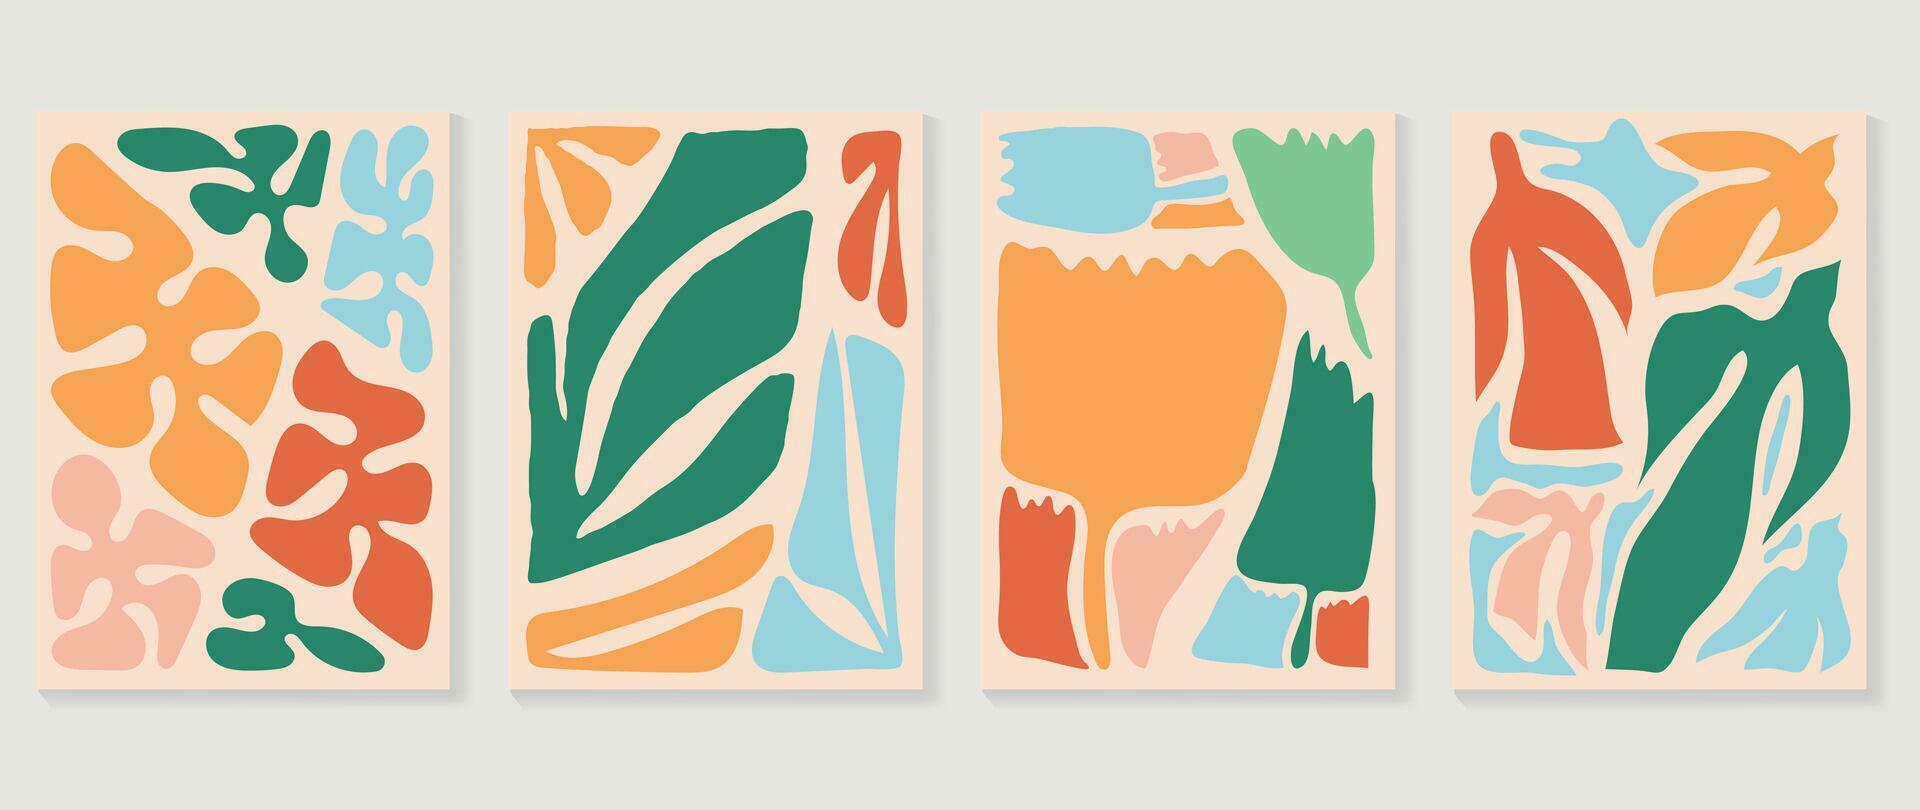 uppsättning av abstrakt färgrik omslag bakgrund. samling av växter, blad gren, korall, alger i hand dragen stil. samtida estetisk illustrerade design för vägg konst, dekoration, tapet, skriva ut. vektor